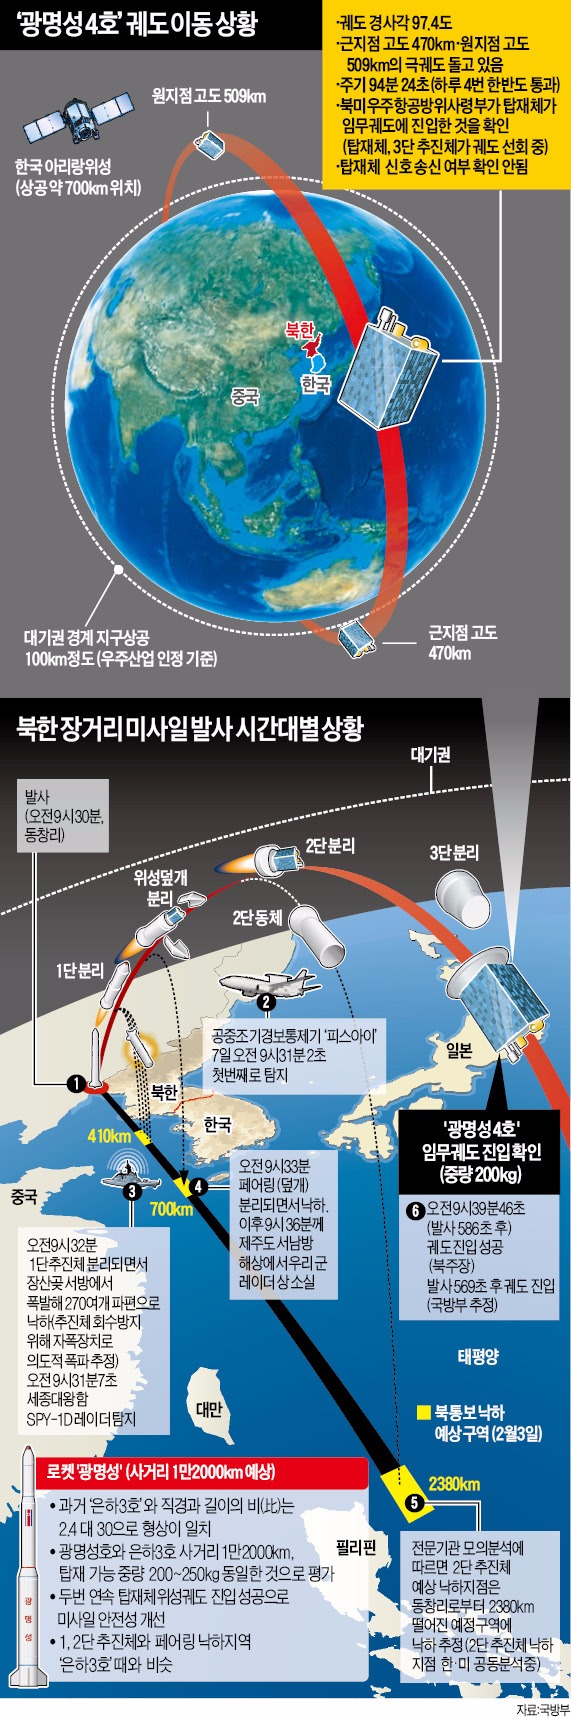 [북 장거리 미사일 도발] 동시다발 악재 속 북한 리스크까지…'칵테일 위기'에 빠진 경제